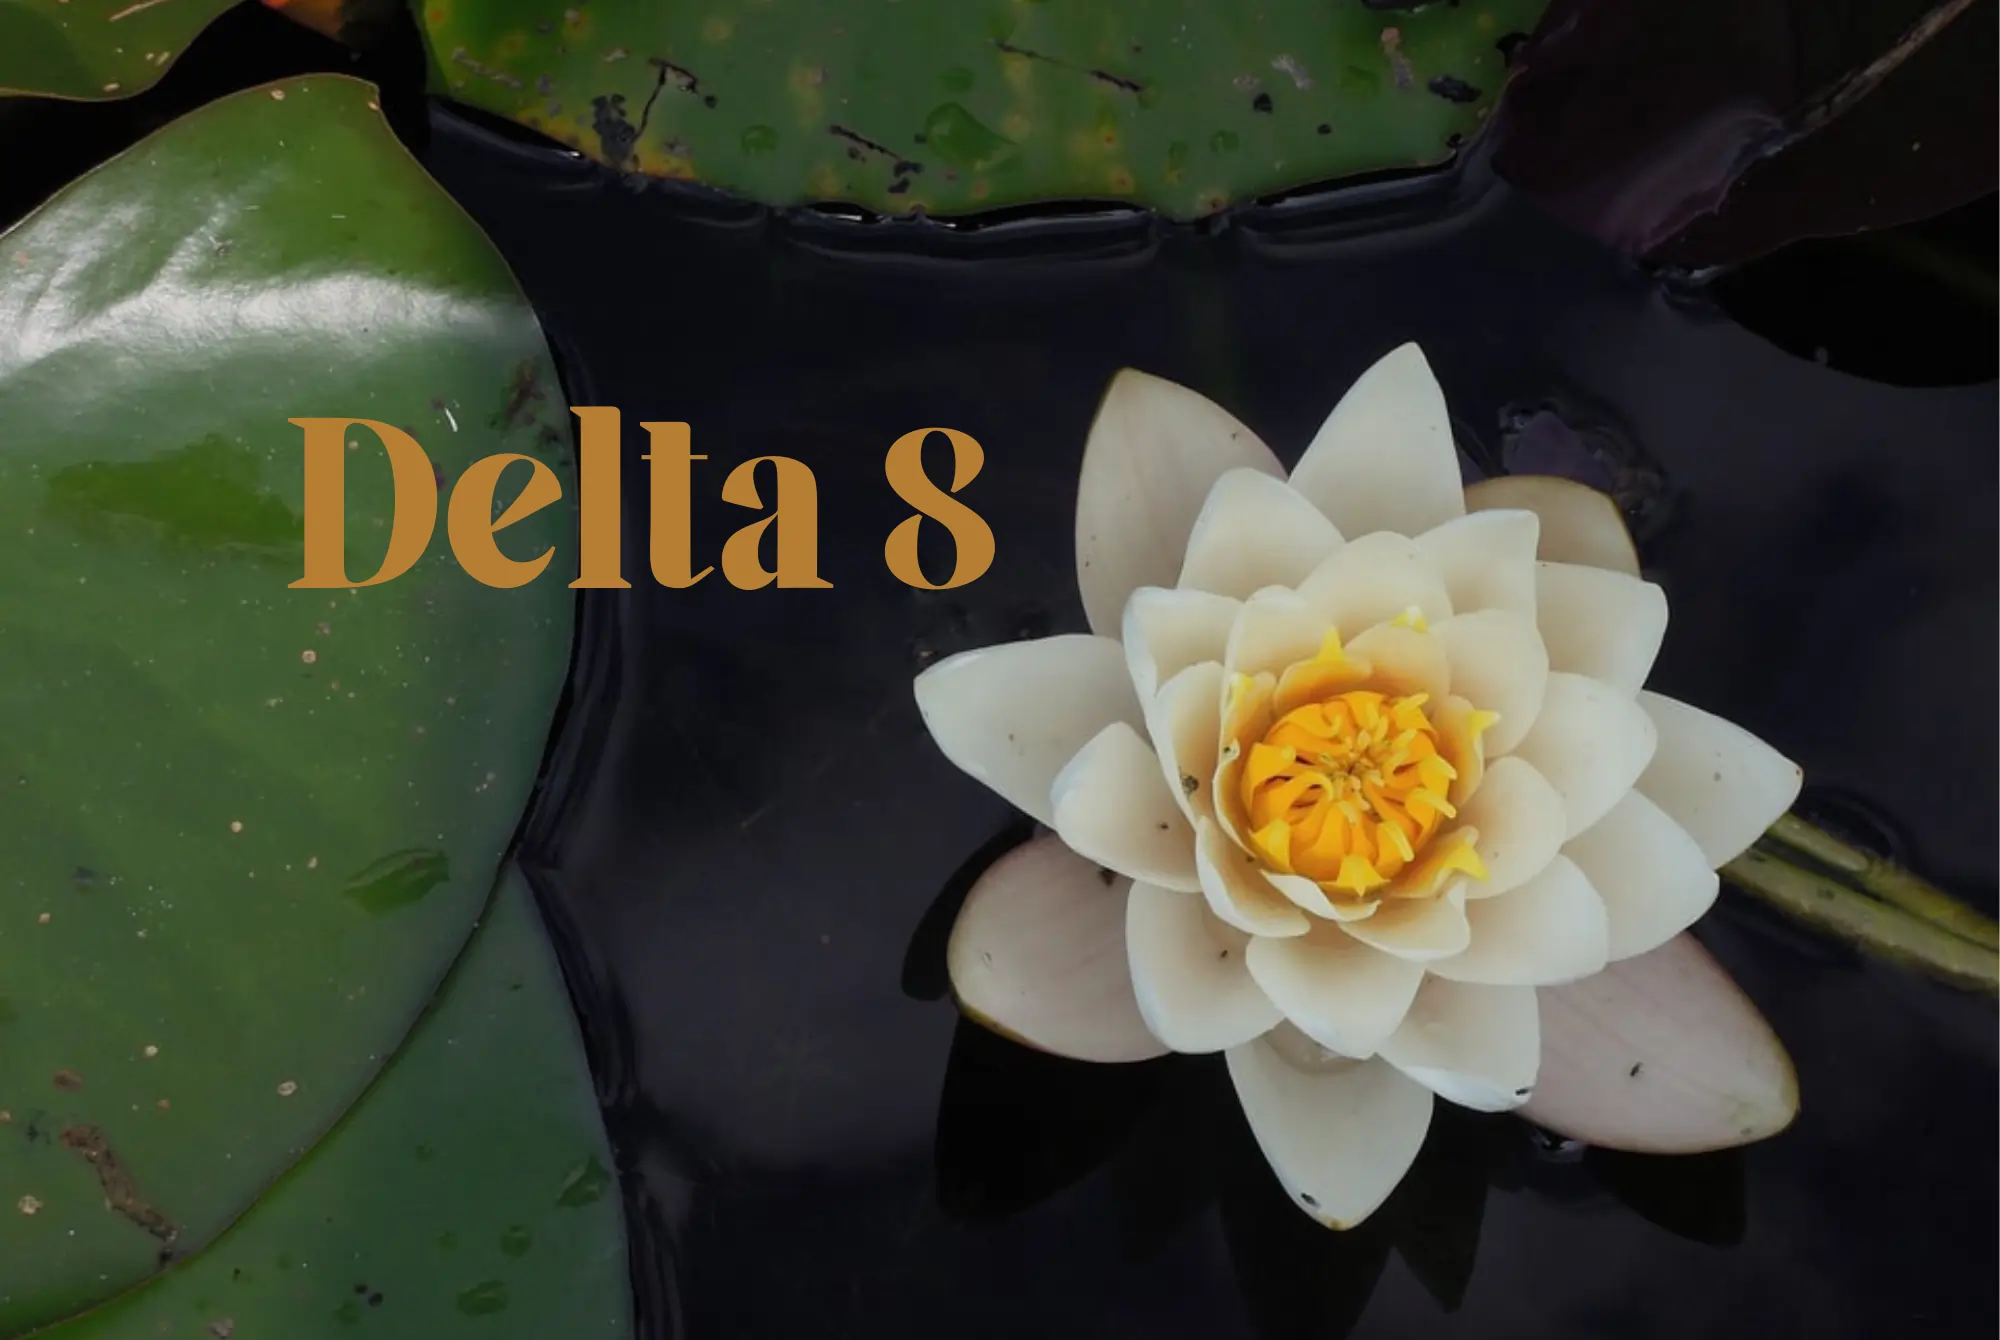 Delta 8 Flower